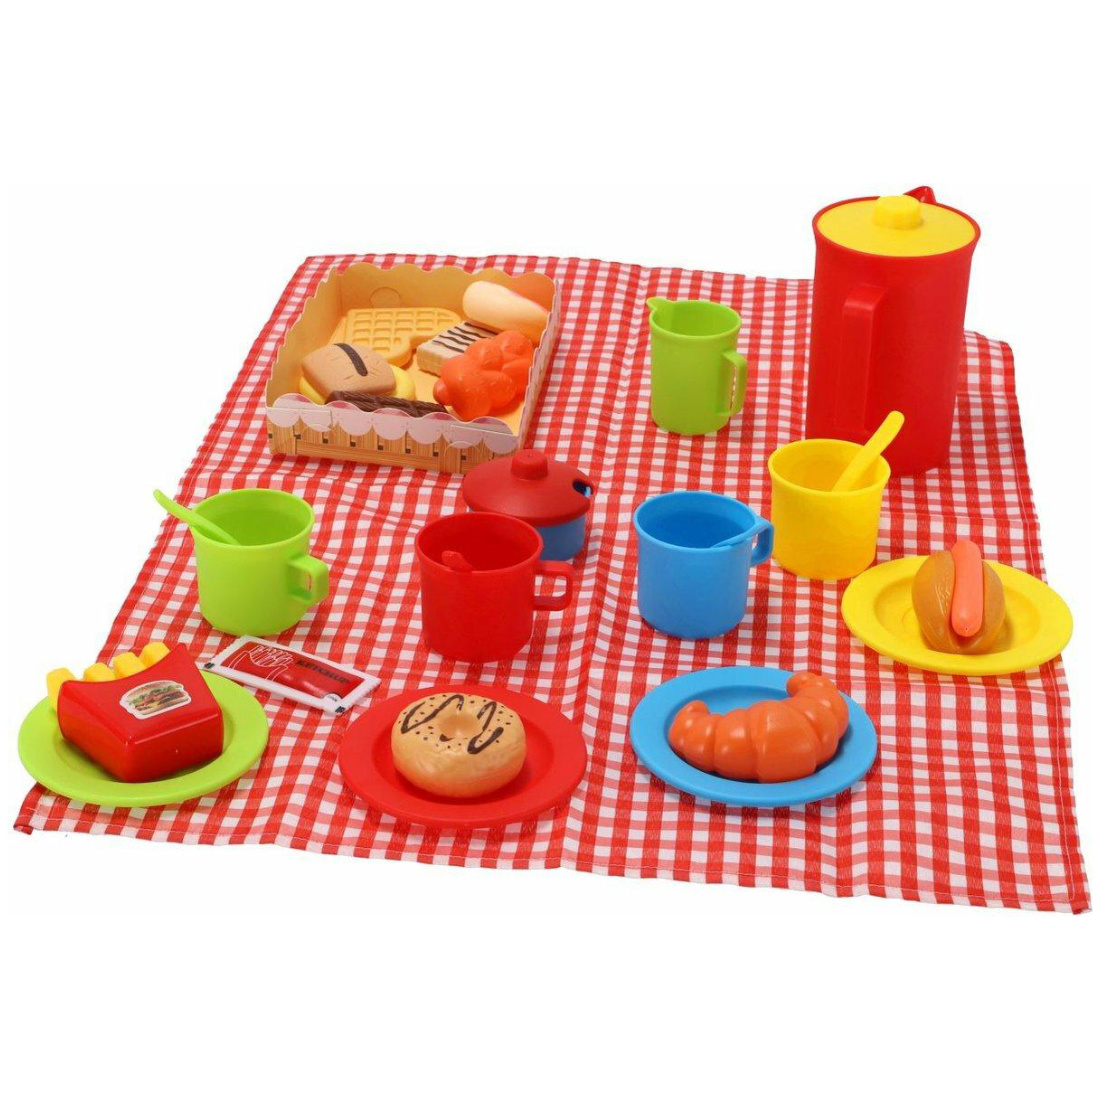 Picknickkorb mit 35 Teile Geschirr Besteck Kanne Decke 